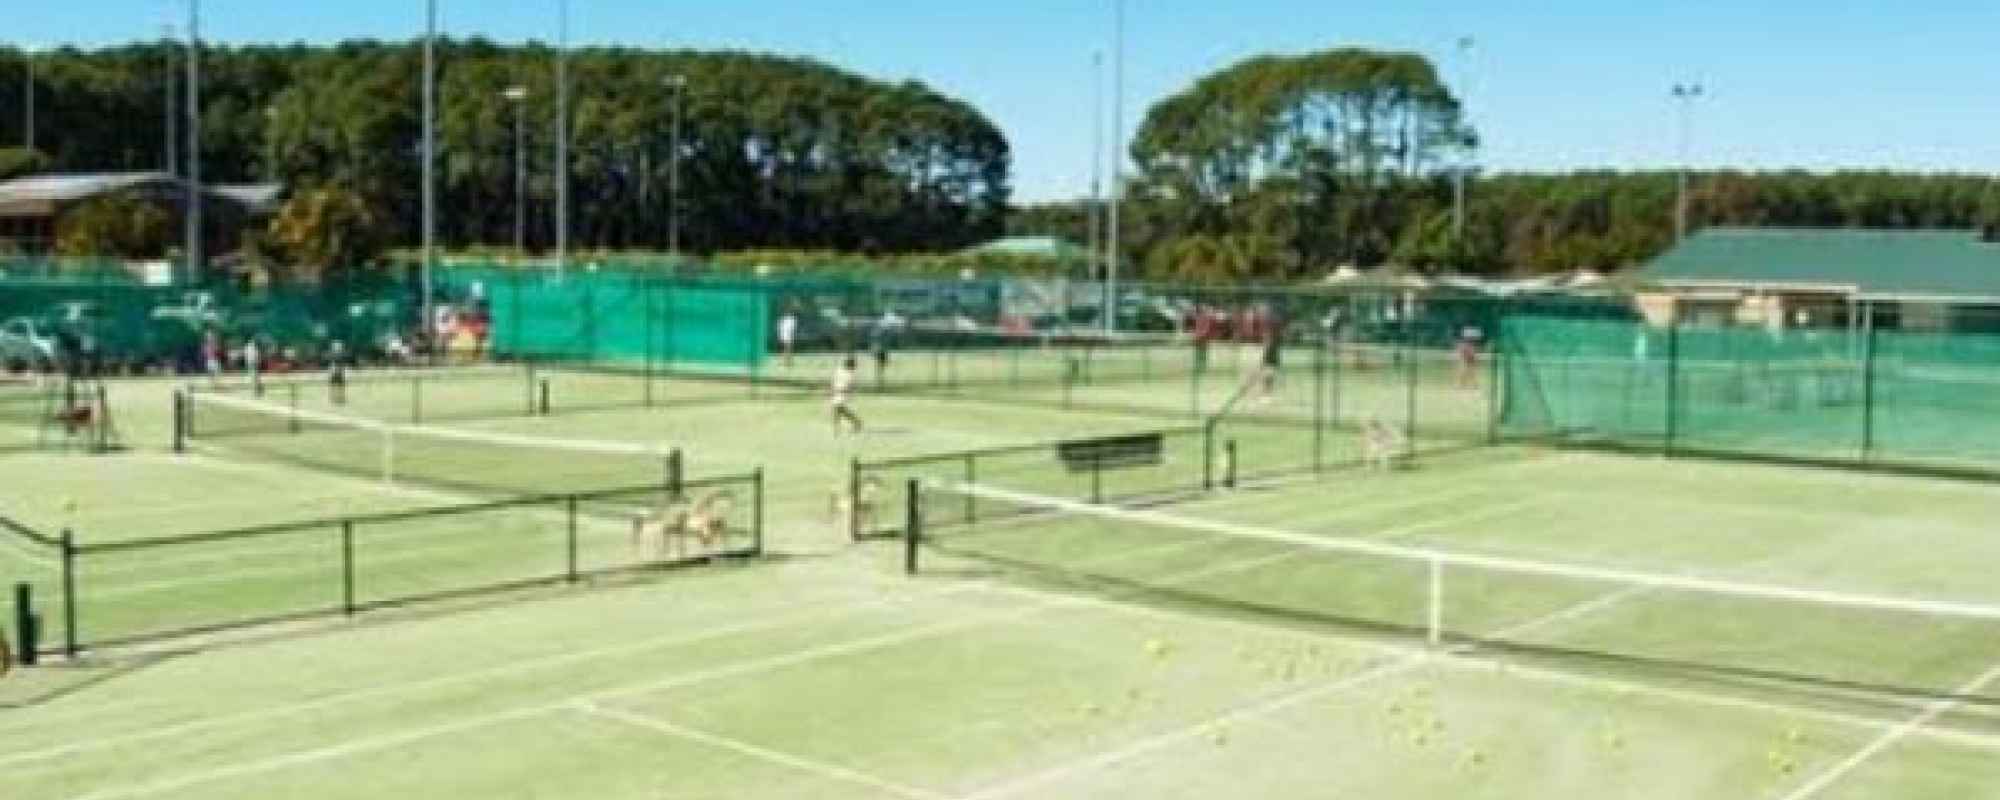 Pizzey Park Complex - tennis